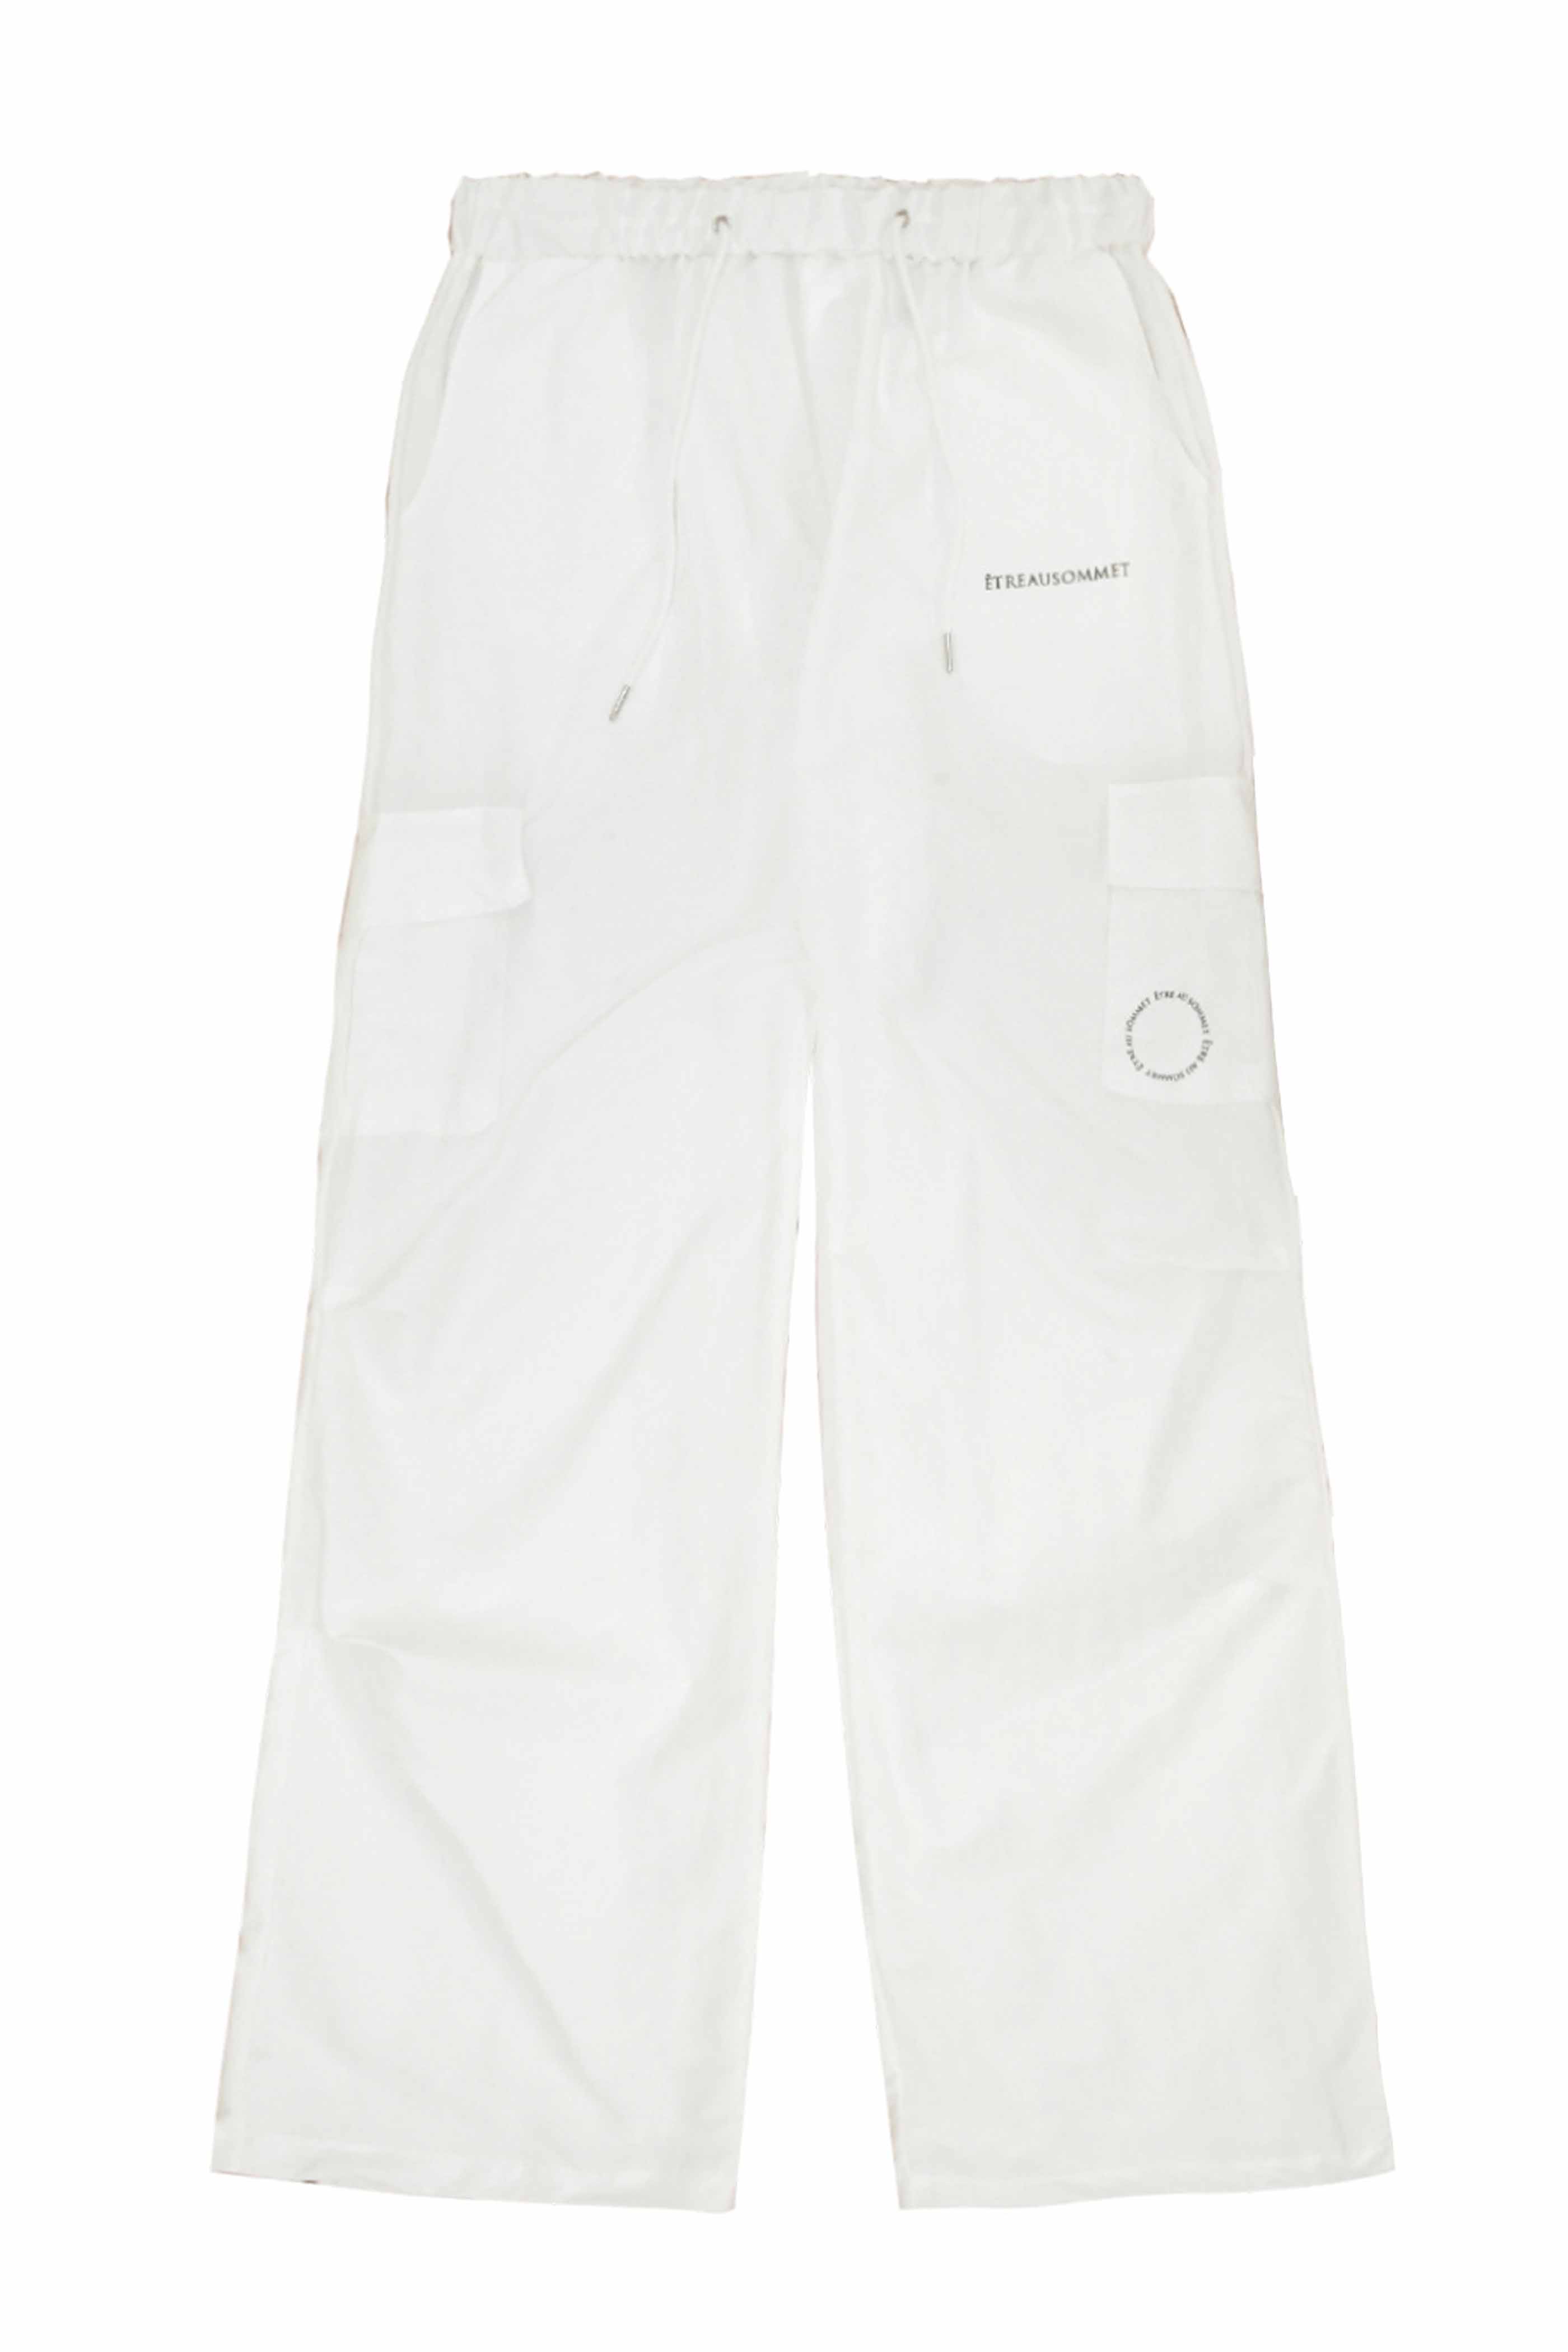 Nylon cargo long pants (white) Unisex